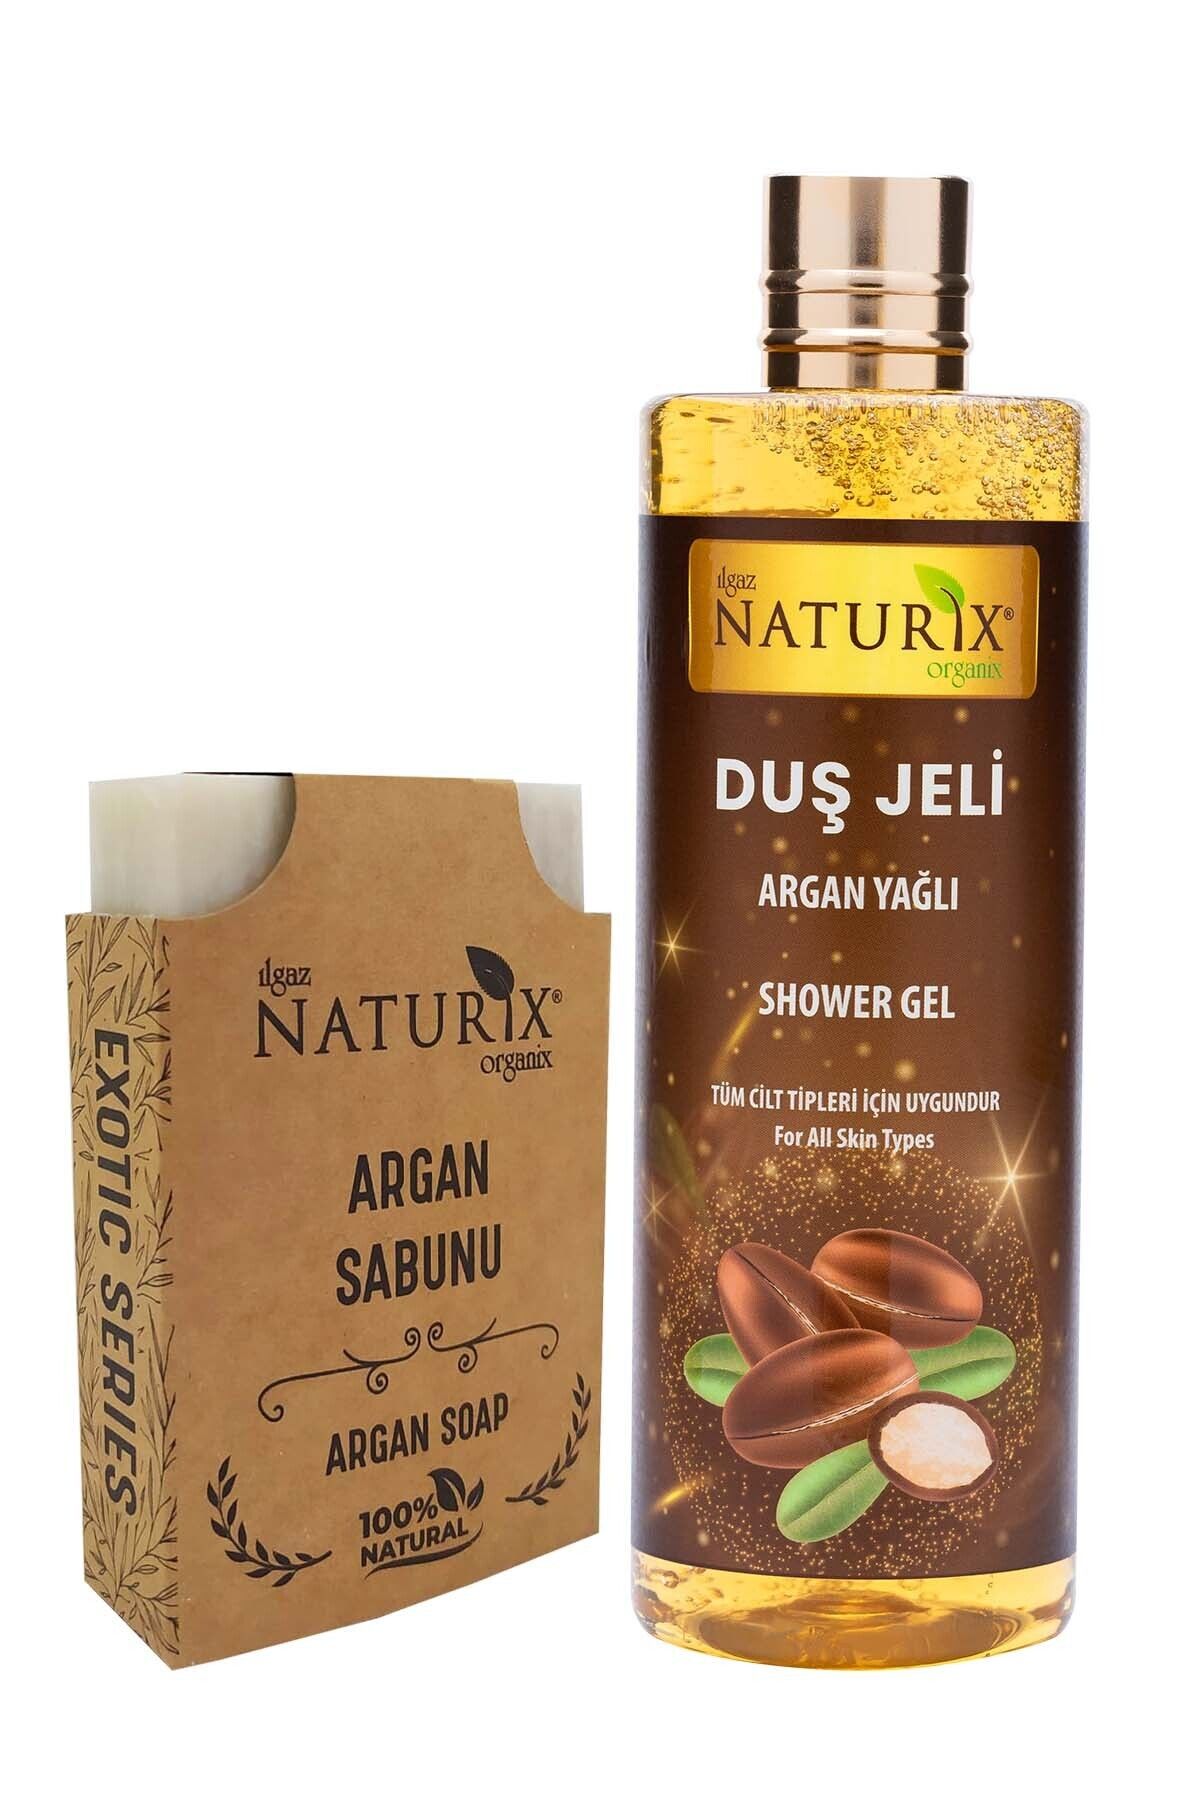 Naturix 2'li Set Argan Yağlı Duş Jeli Paraben Fosfat İçermez 400 Ml + %100 Doğal Argan Sabun Argan Soap